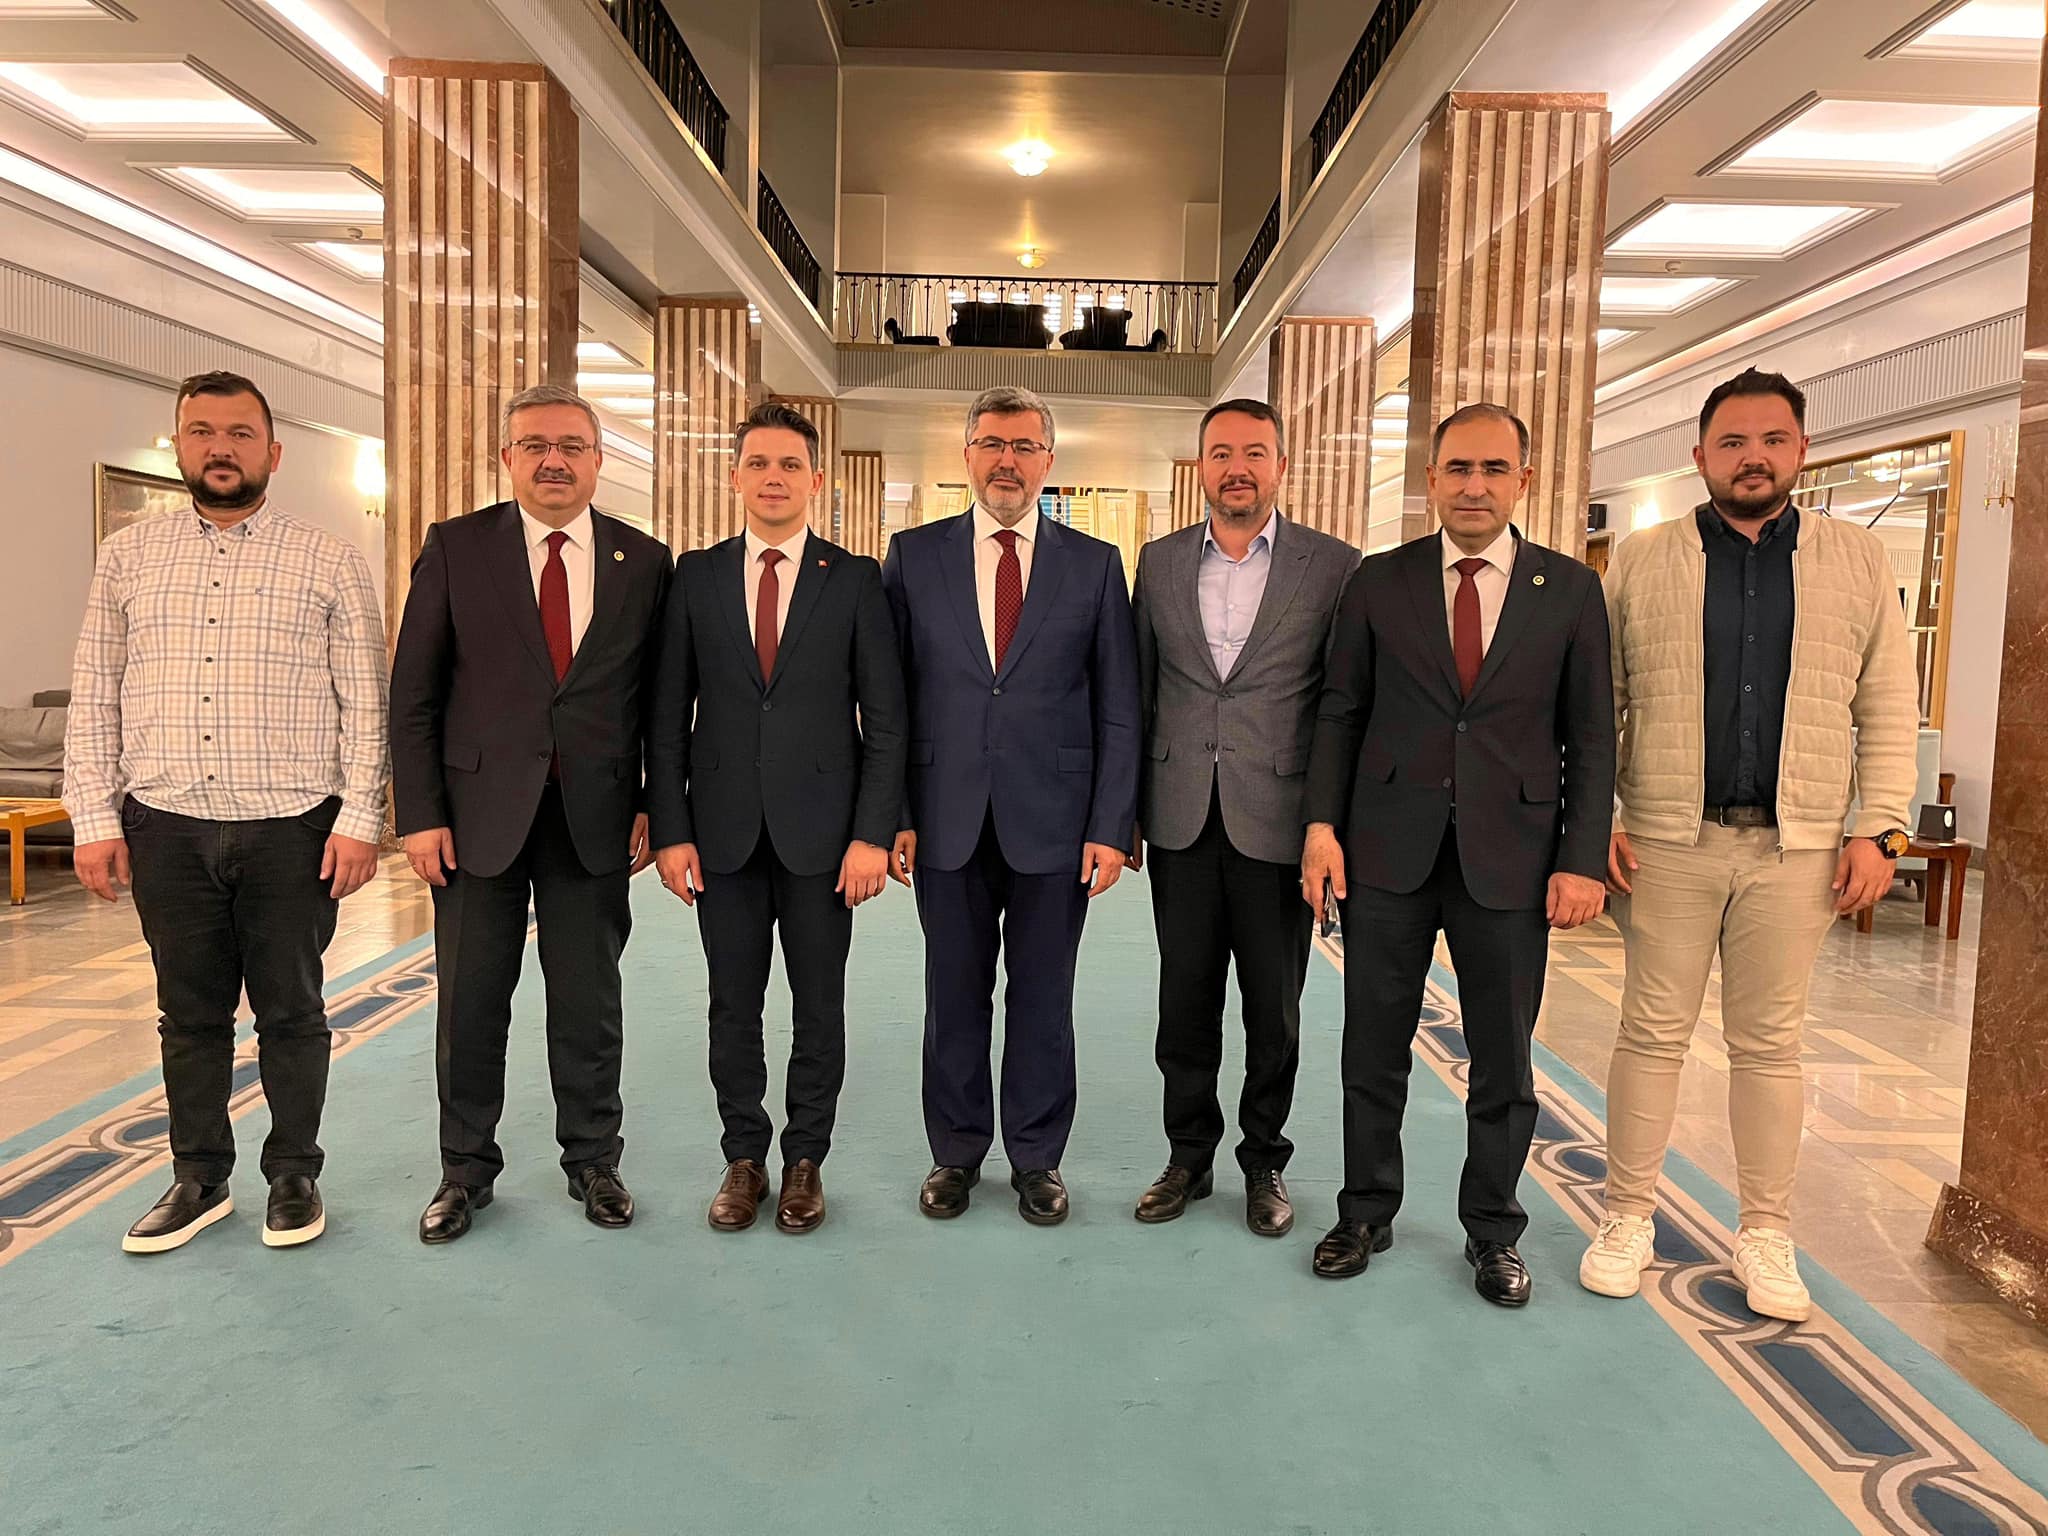 Afyonkarahisar Milletvekili Ali Özkaya, Sandıklı Belediye Başkanı Adnan Öztaş ve Dazkırı Belediye Başkanı Fatih Çiçek'i TBMM'de ağırladı